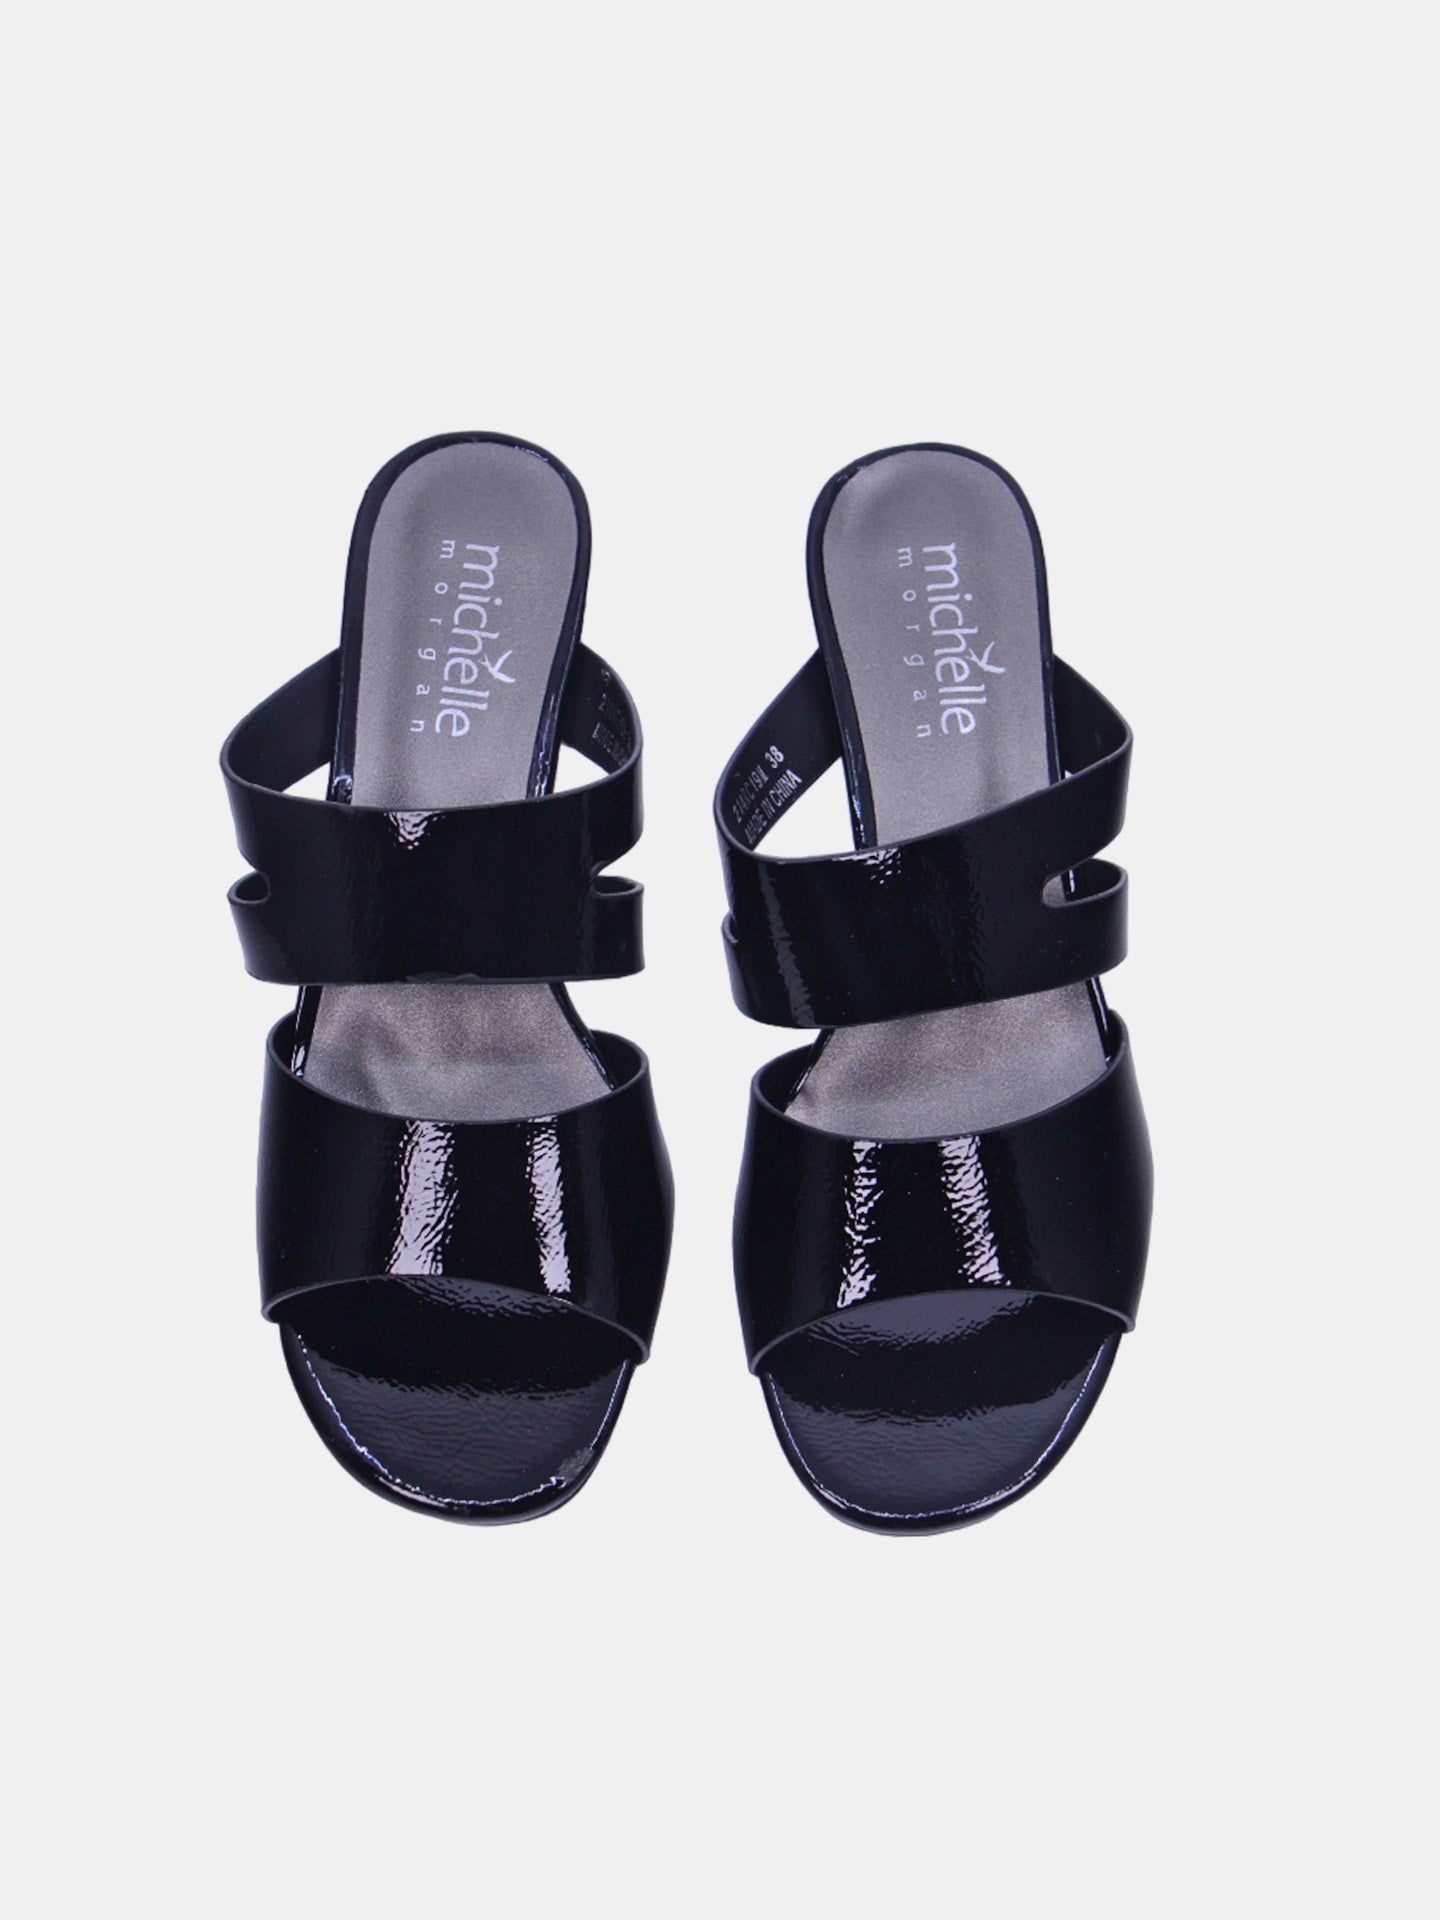 Michelle Morgan 214RC19M Women's Heeled Sandals #color_Black